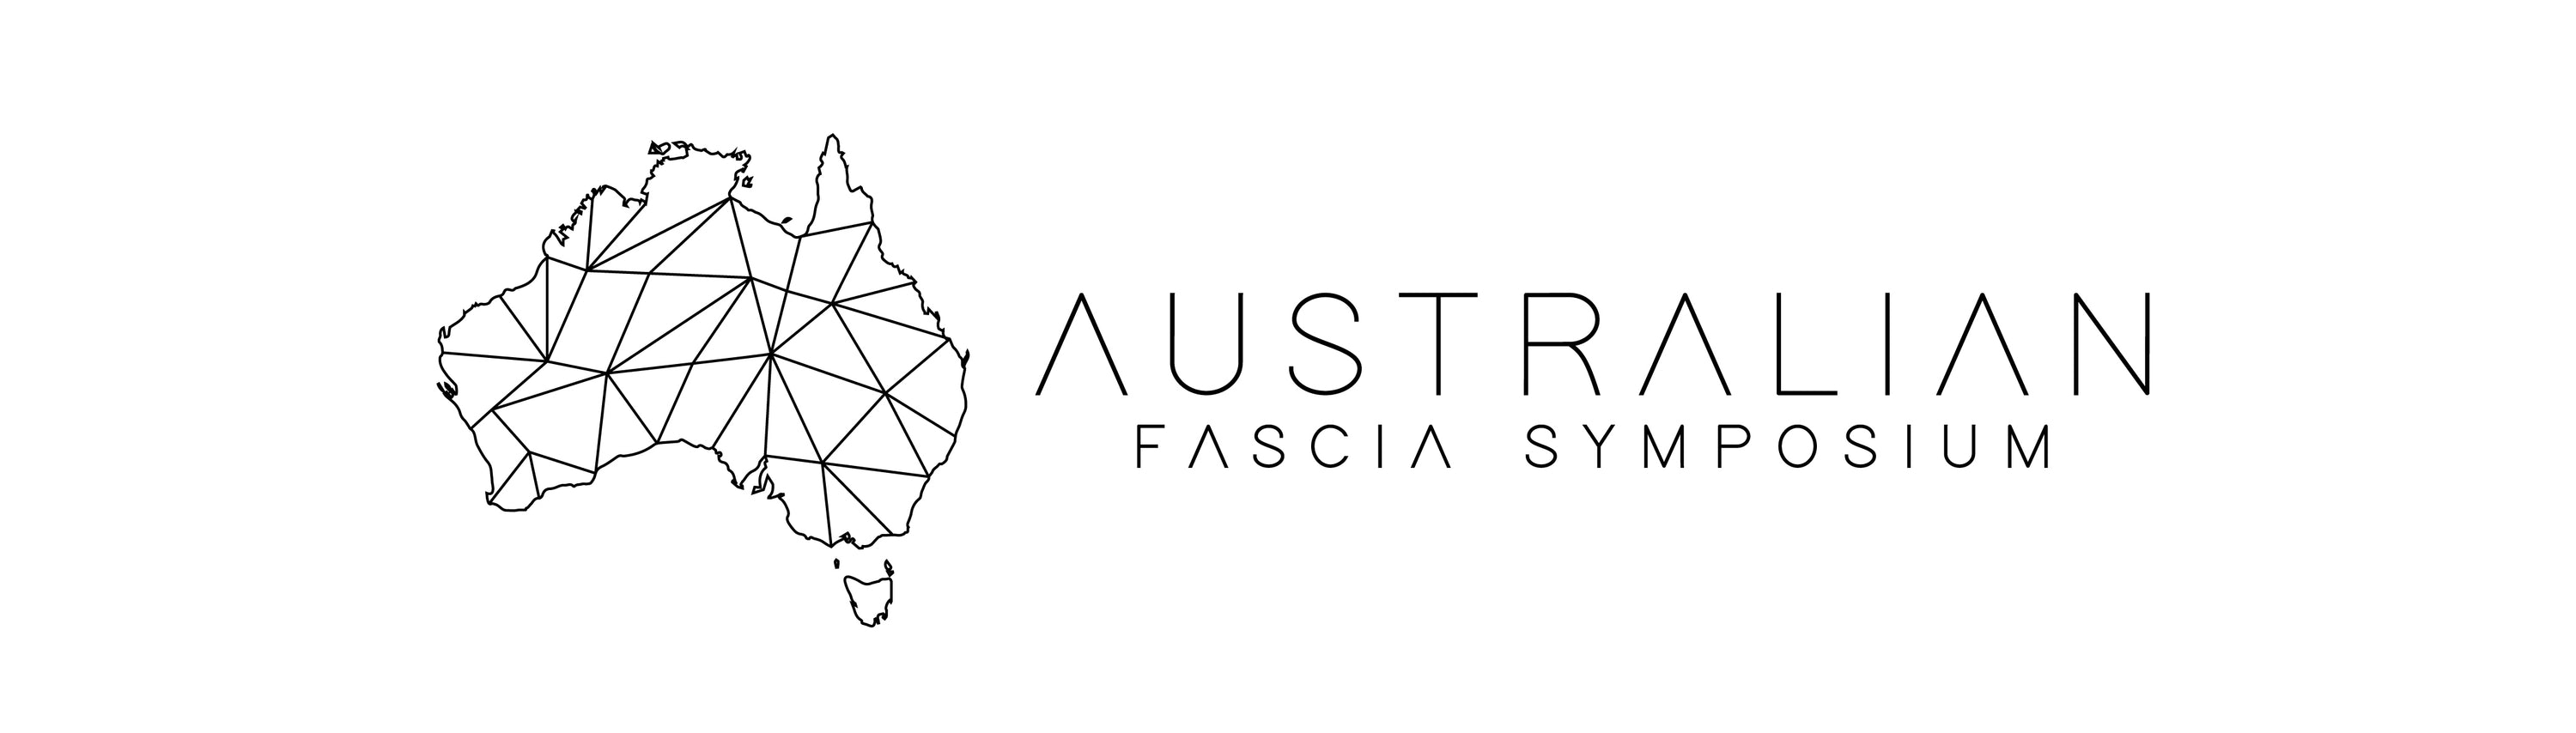 Working With The Australian Fascia Symposium